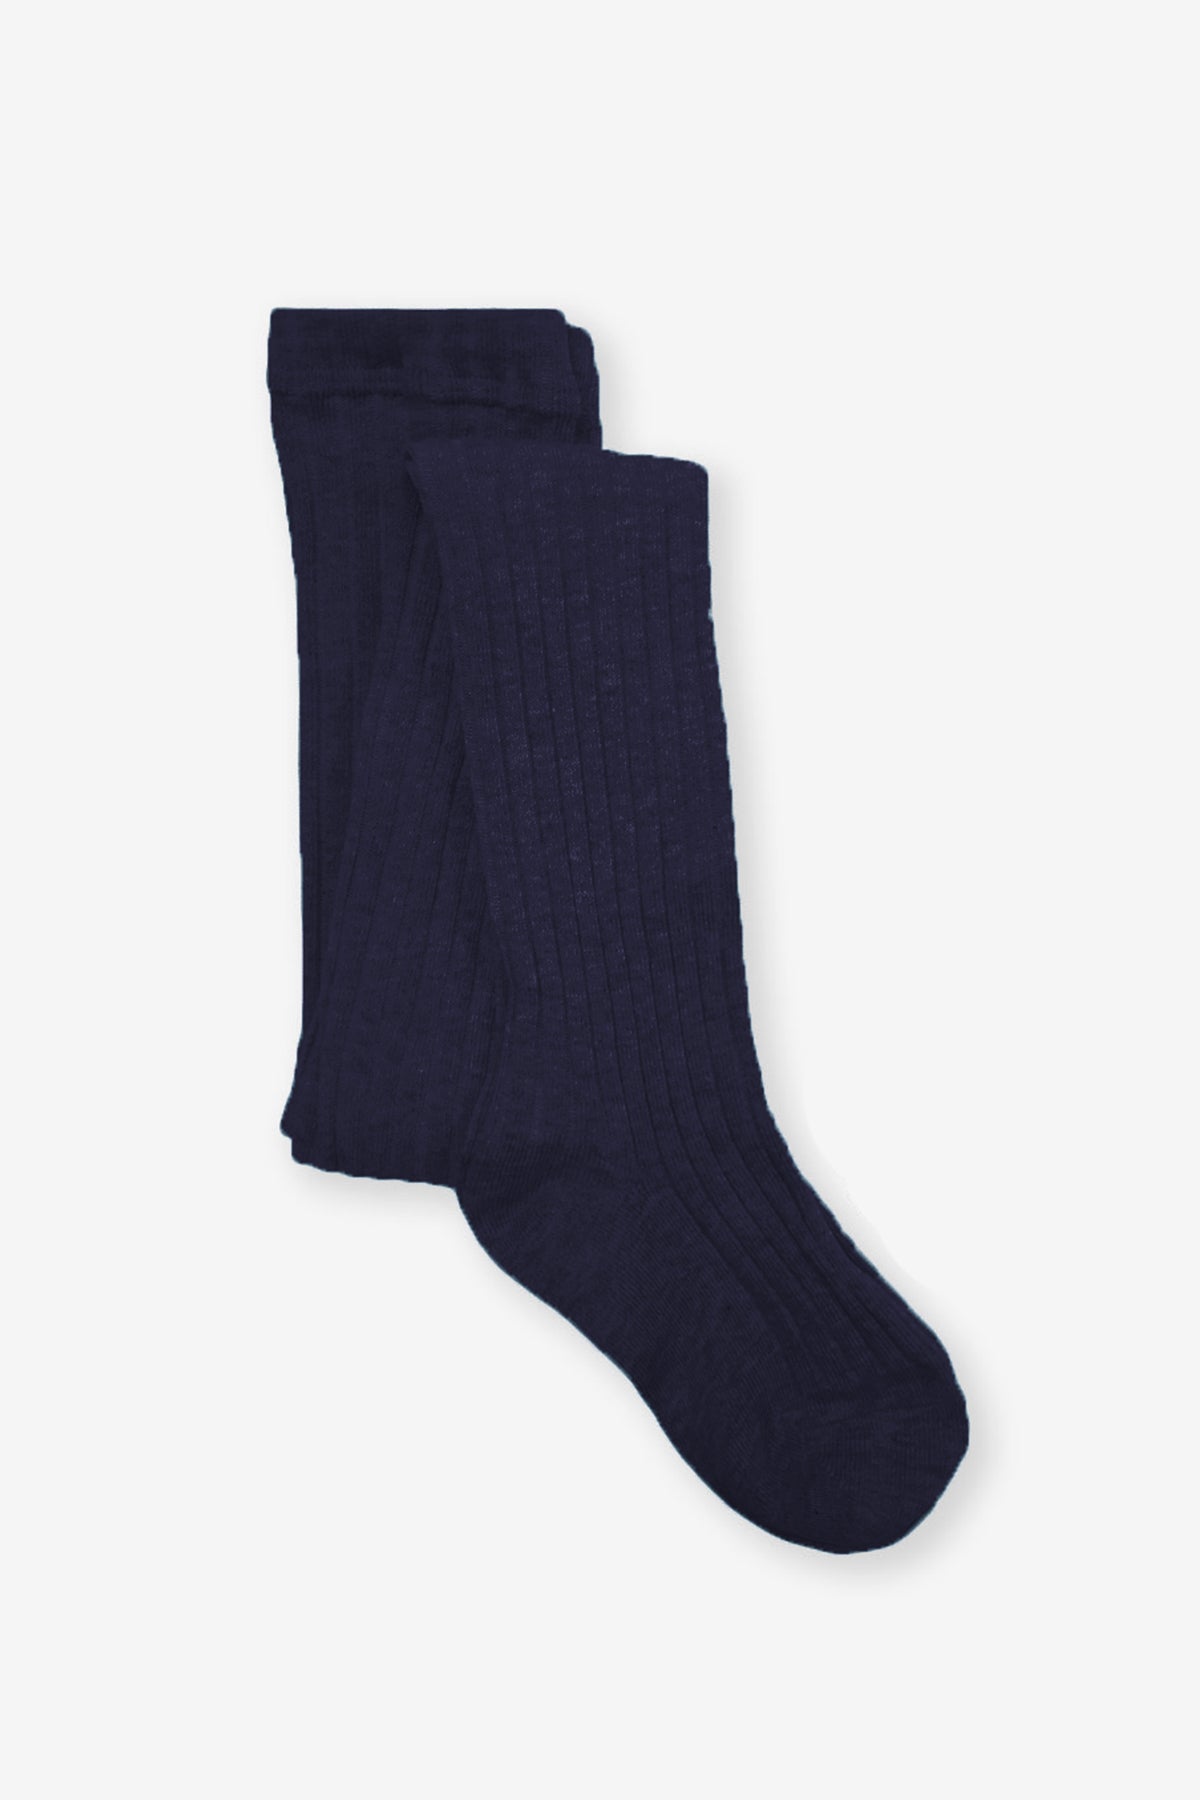 Jefferies Socks Rib Girls Tights - Navy – Mini Ruby